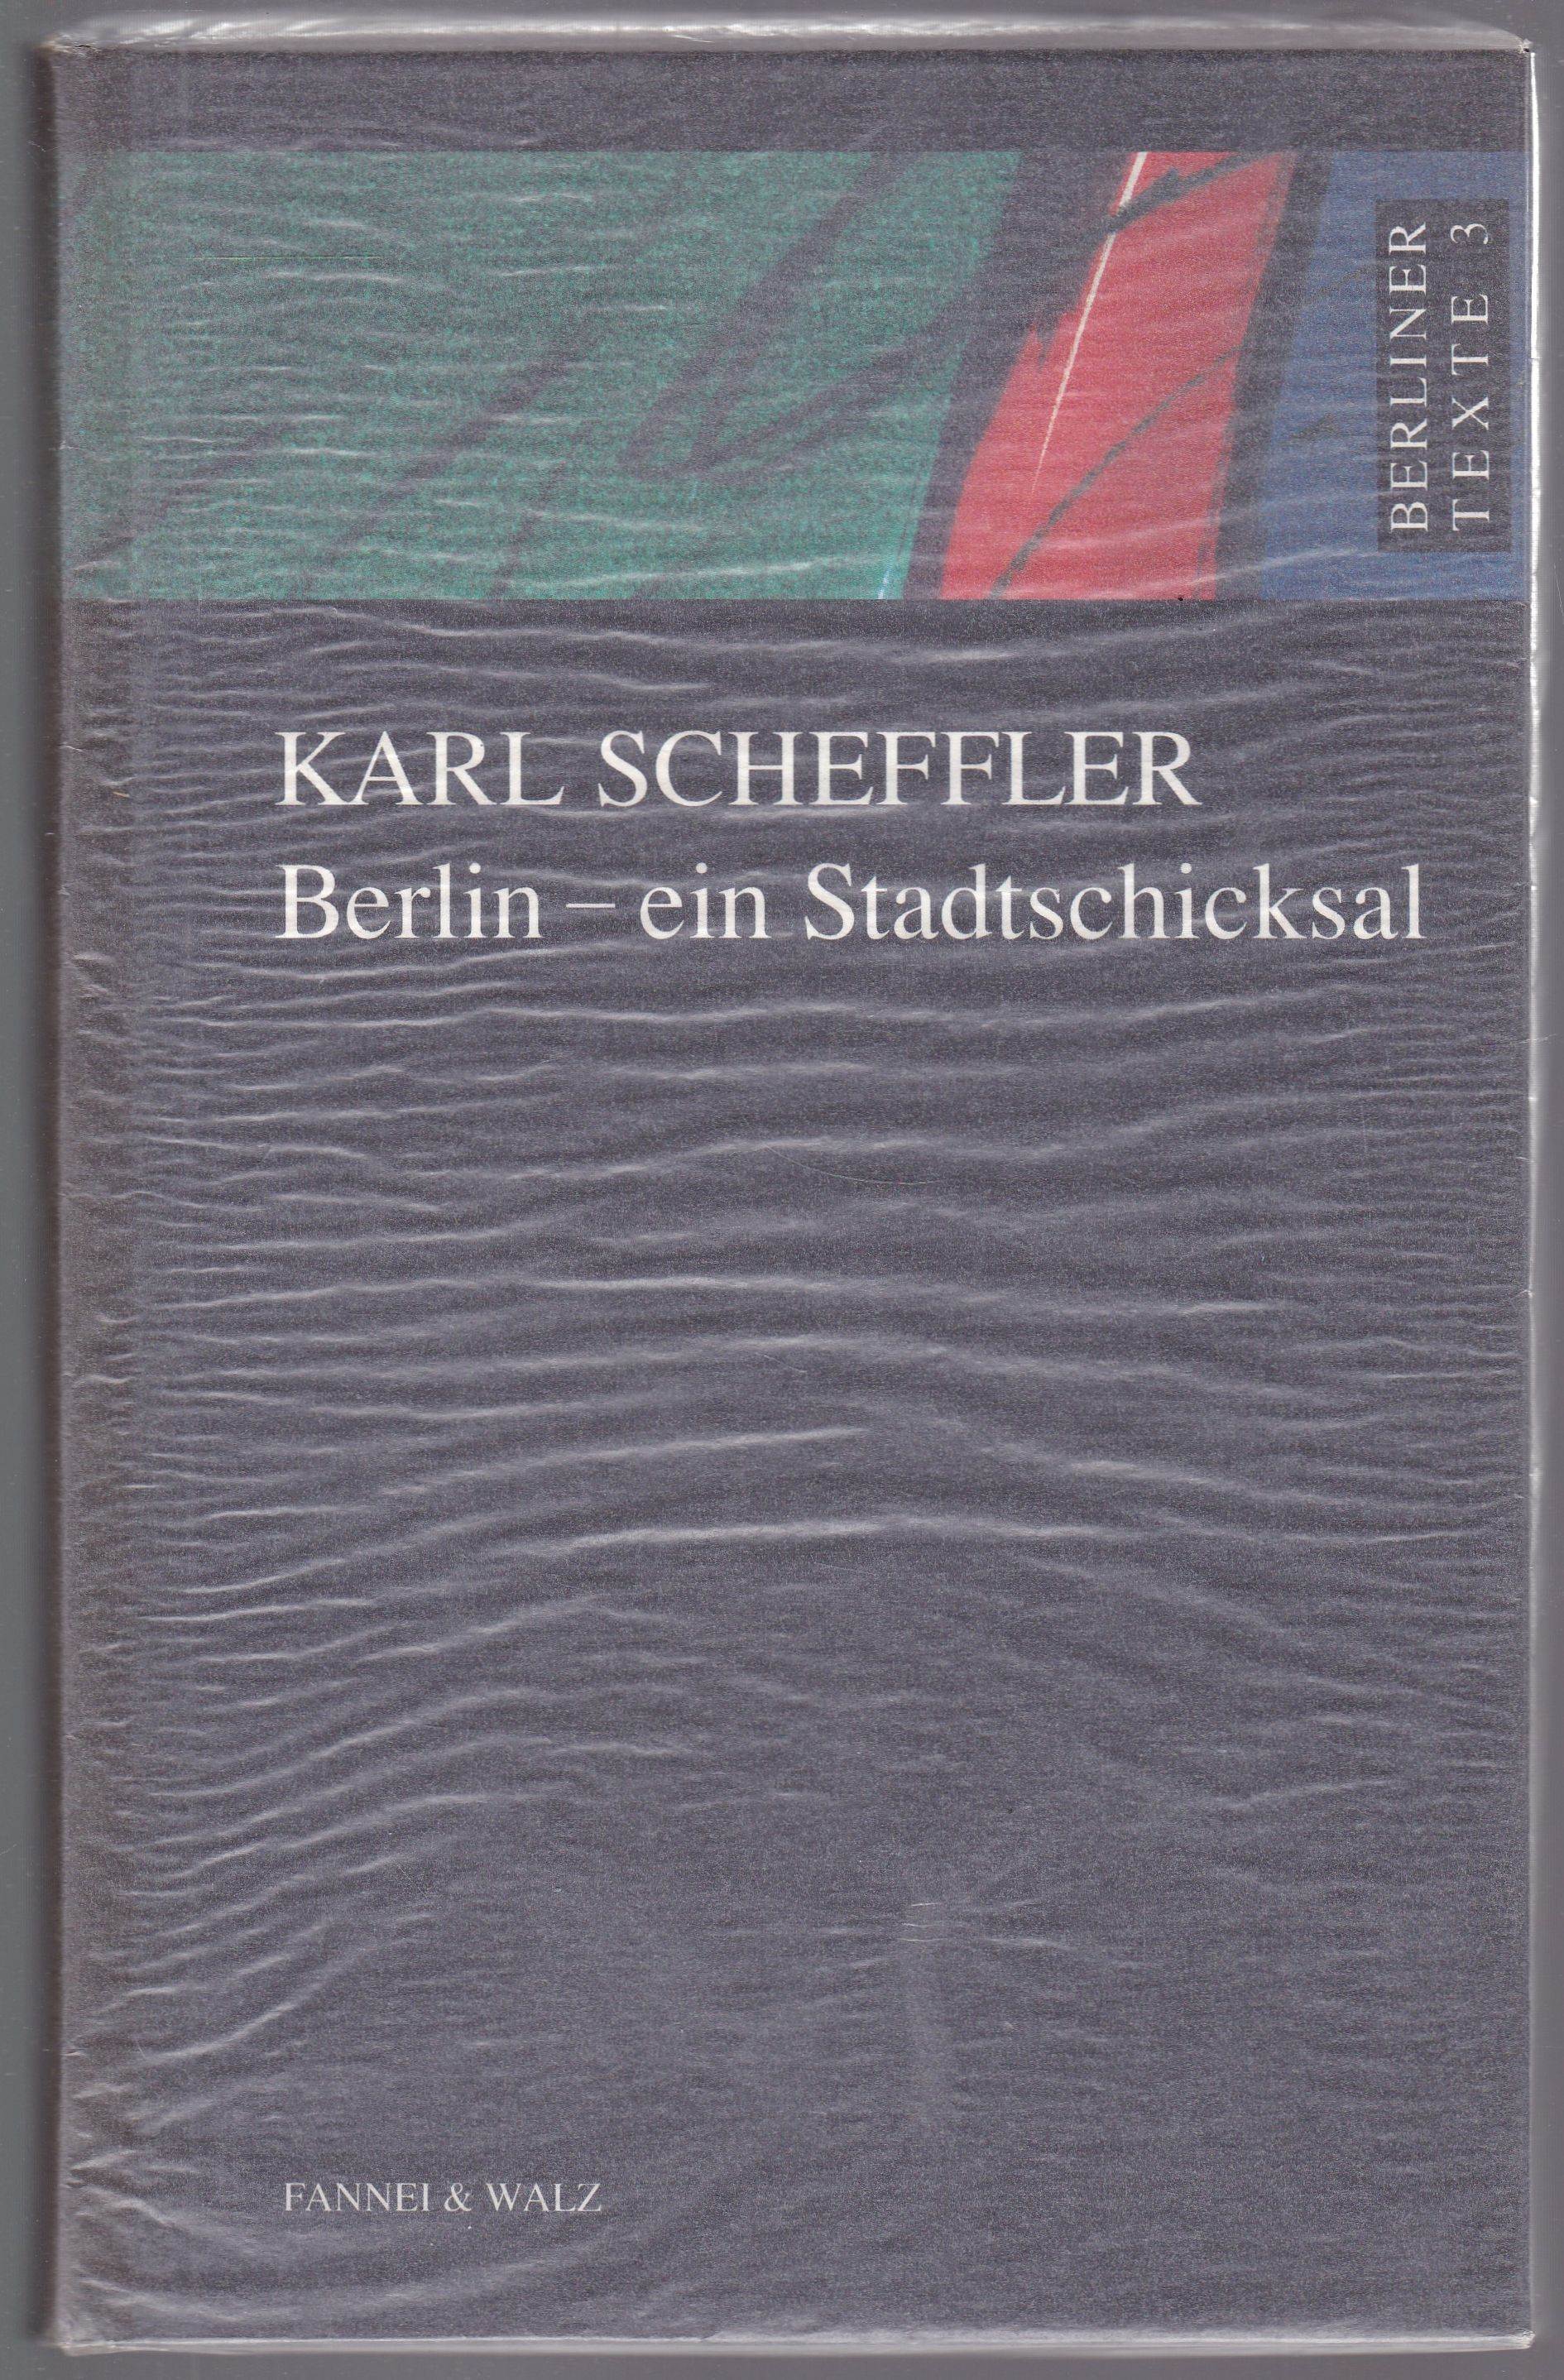 Berlin - ein Stadtschicksal. Herausgegeben und mit einem Nachwort von Detlef Blum (= Berliner Texte, Band 3) - Scheffler, Karl